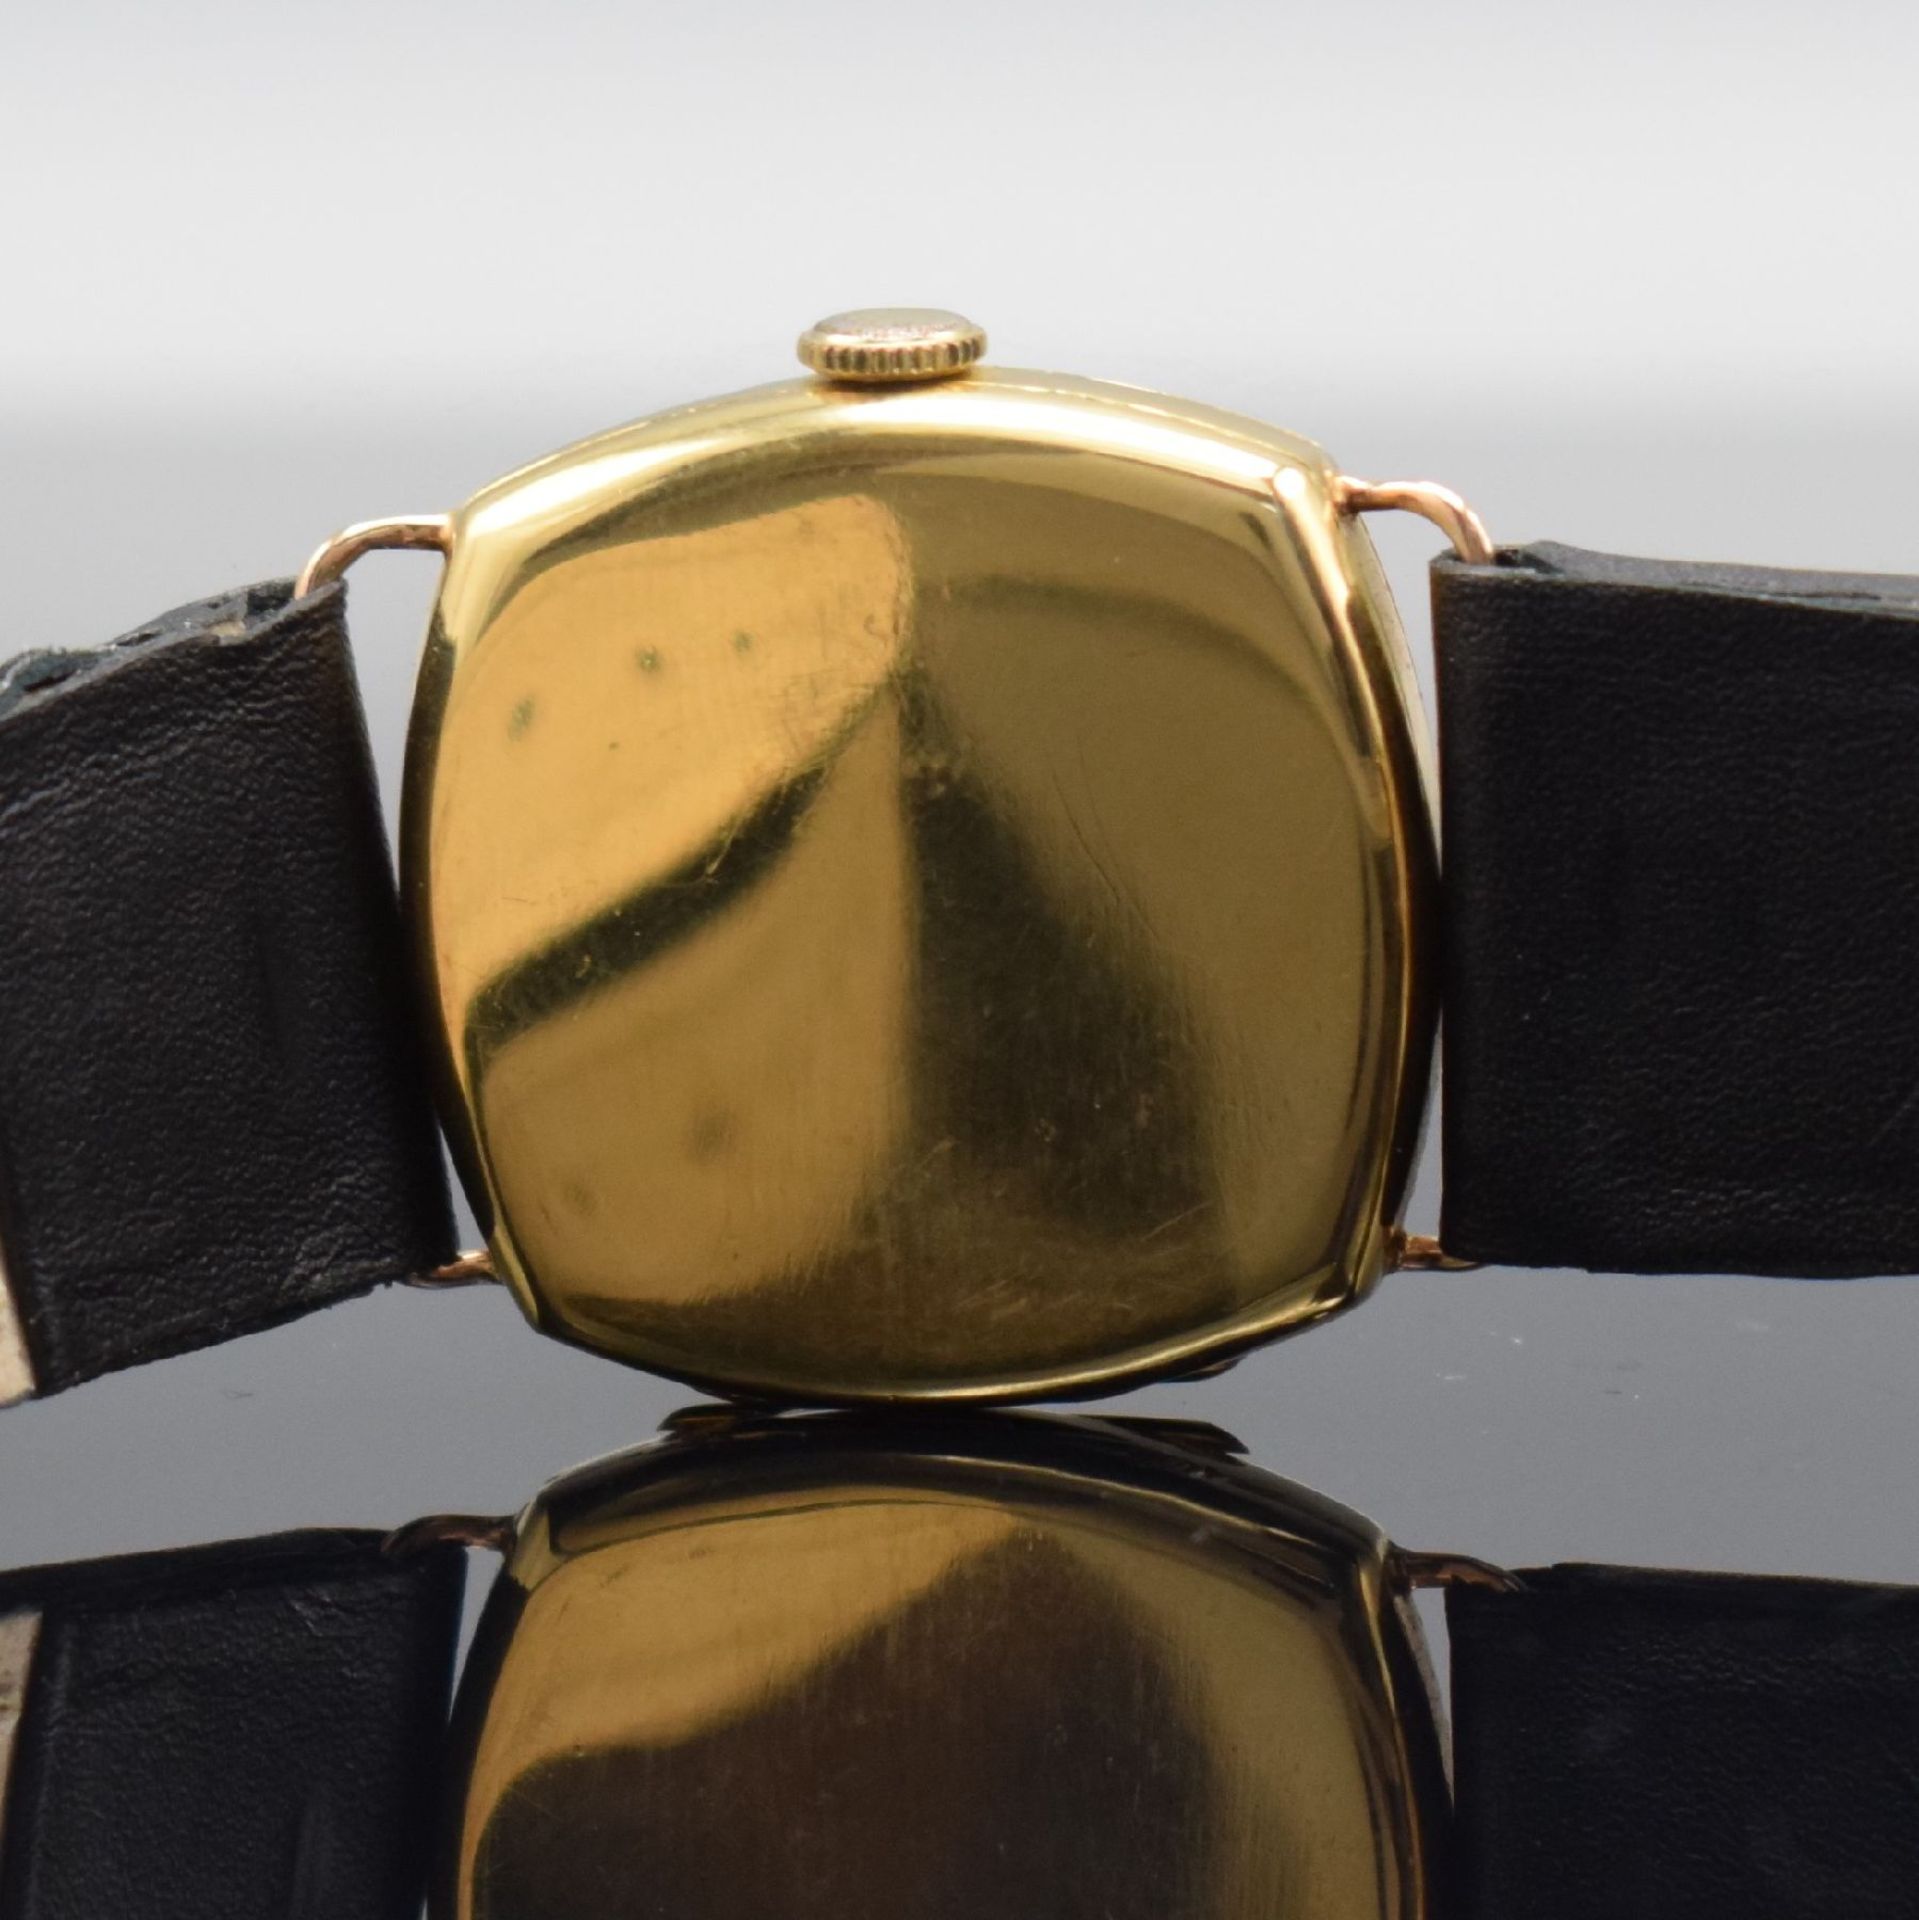 IWC frühe, seltene Armbanduhr in GG 750/000 mit Kaliber - Bild 7 aus 10